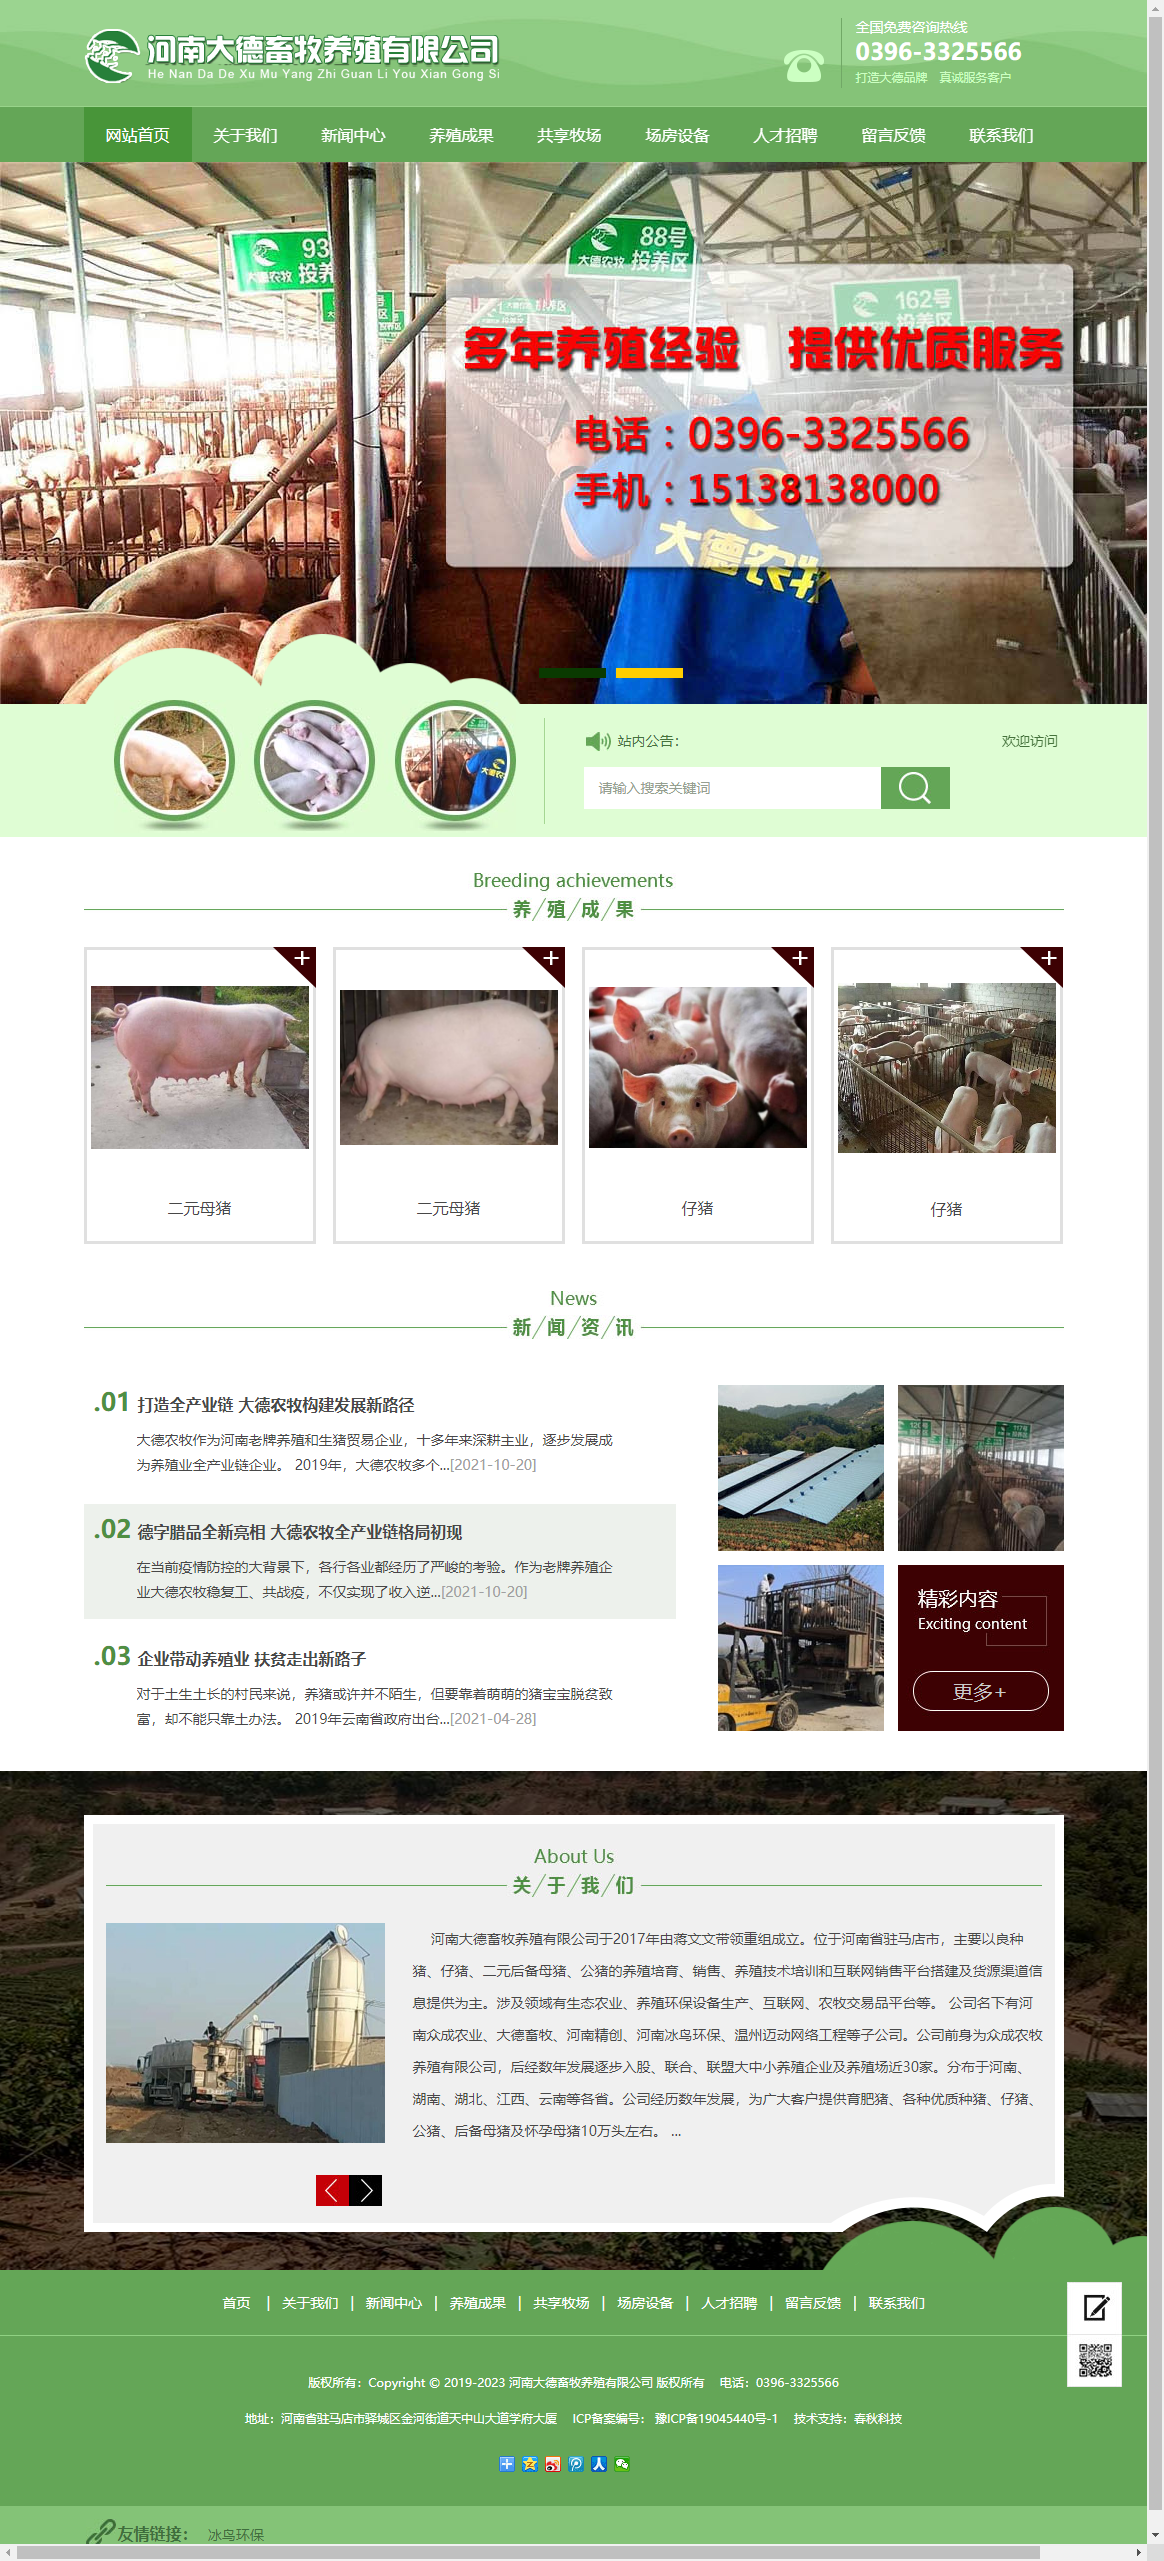 河南大德畜牧养殖有限公司网站案例